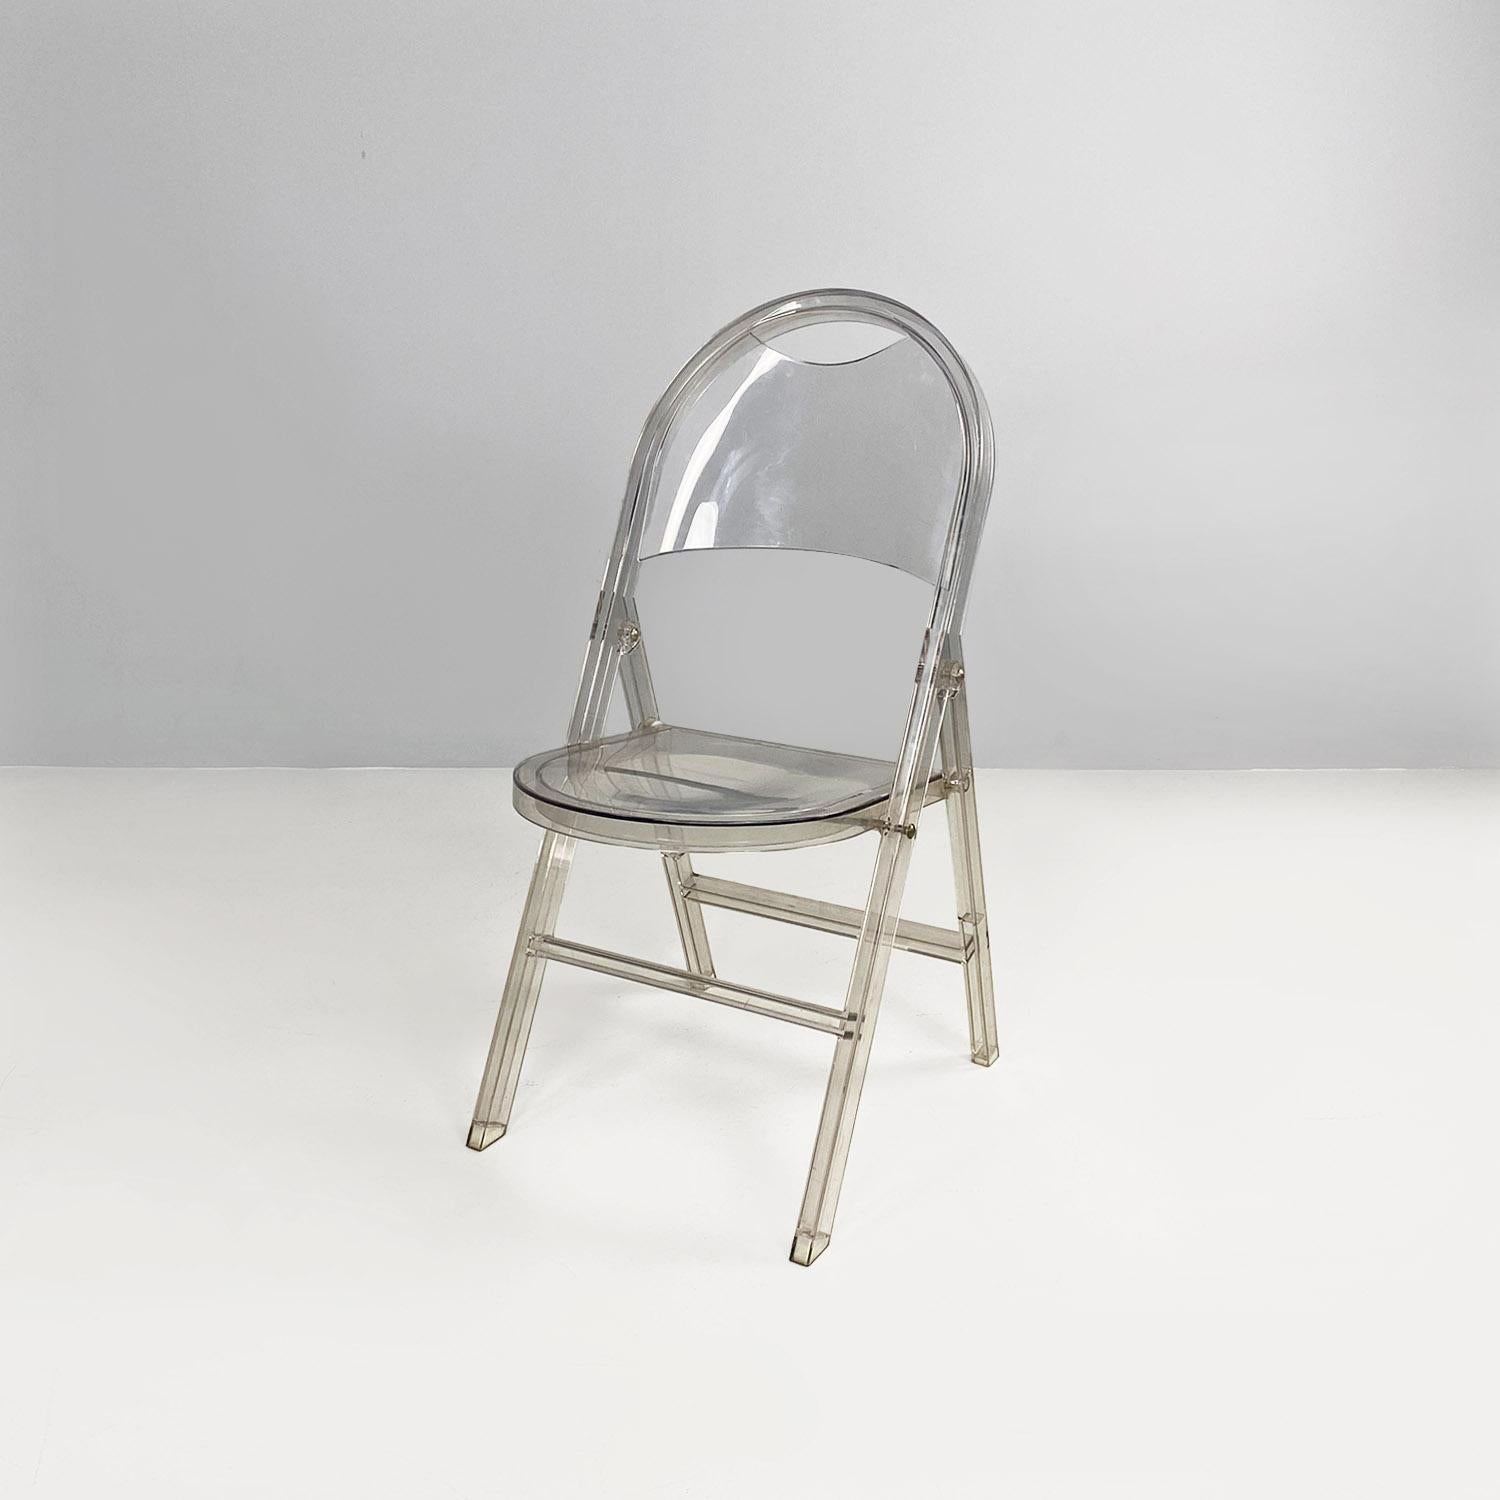 Italienische Moderne Klappstuhl Tric von Achille und Pier Giacomo Castiglioni für Bonacina, 2000er Jahre
Klappstuhl Mod. Tric ganz aus transparentem Plexiglas. Der Sitz und die Rückenlehne sind abgerundet. Die Beine haben einen rechteckigen